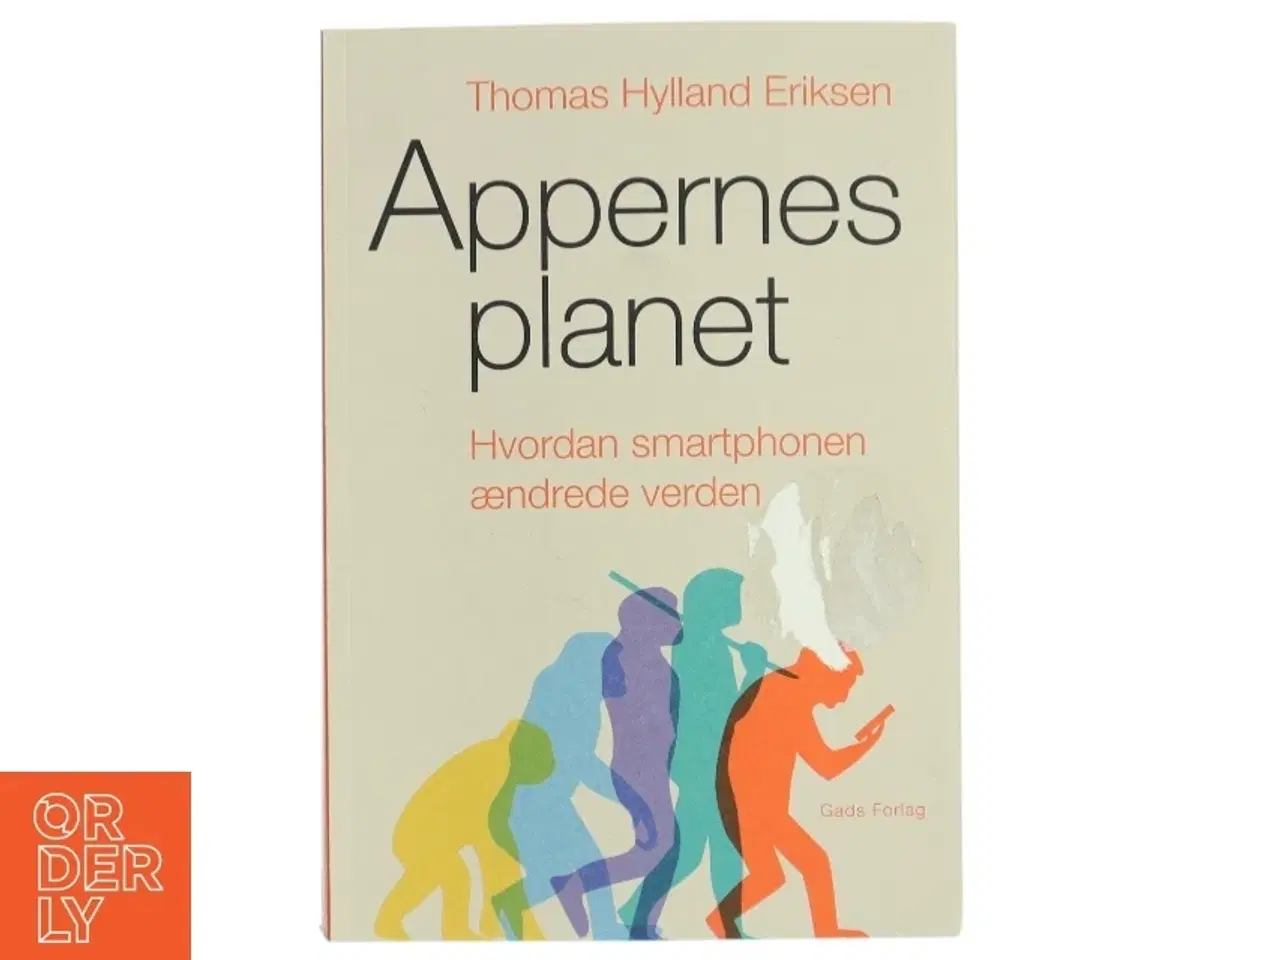 Billede 1 - Appernes planet af Thomas Hylland Eriksen fra Gads Forlag